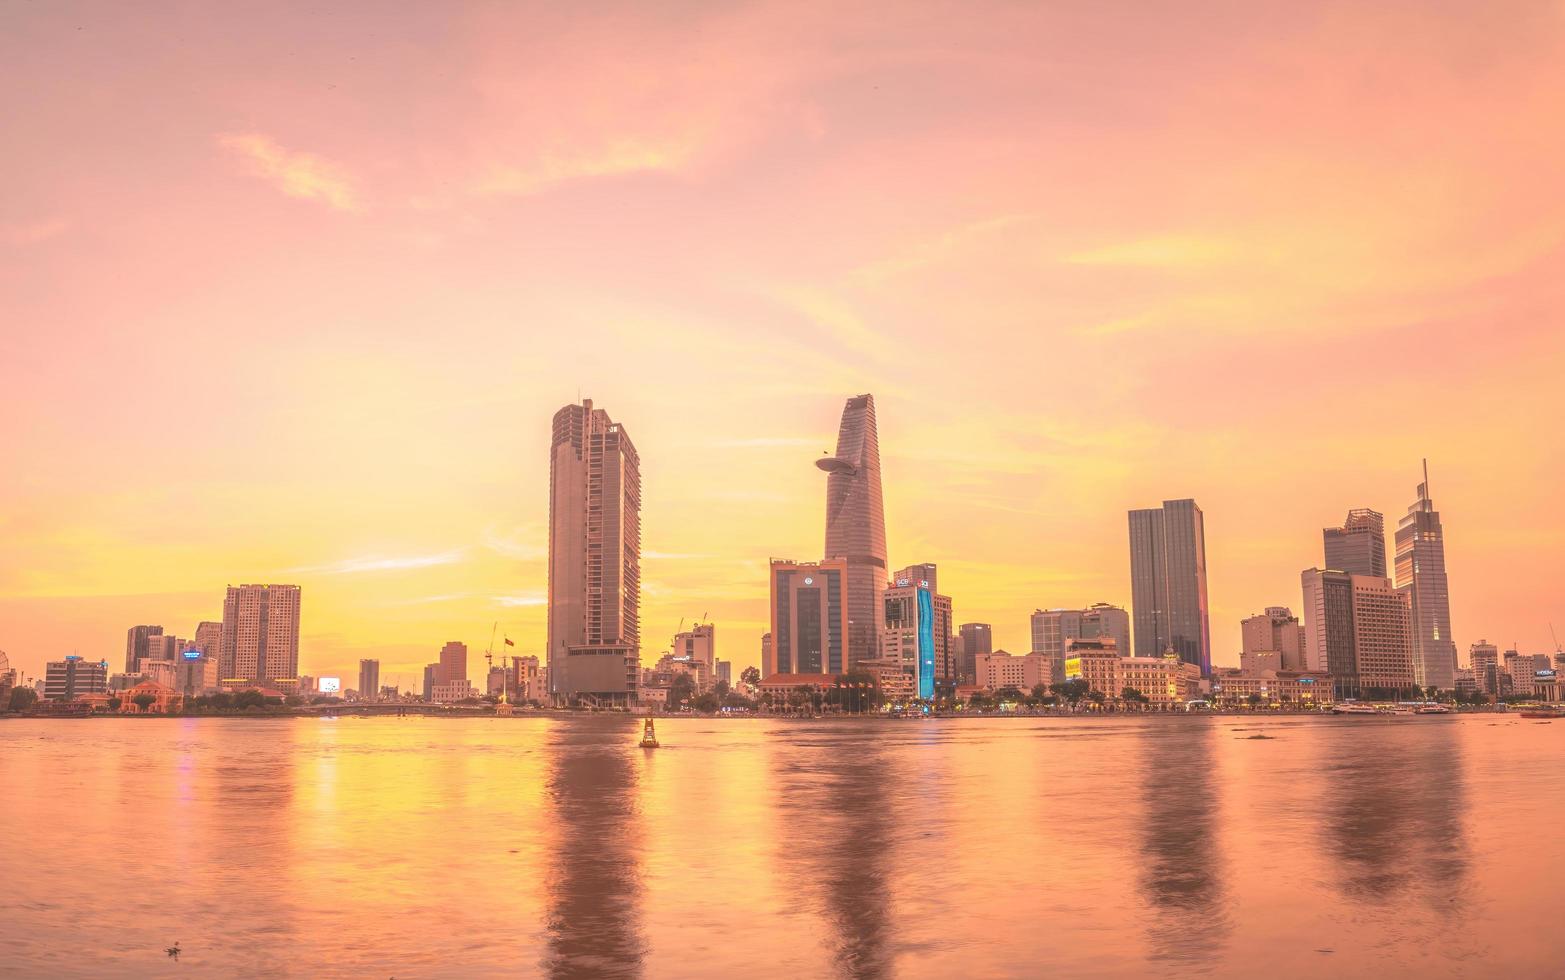 ho chi minh, vietnam - 19 febbraio 2022 vista dell'edificio della torre finanziaria di bitexco, edifici, strade, ponte thu thiem e fiume saigon nella città di ho chi minh al tramonto. immagine panoramica di alta qualità. foto